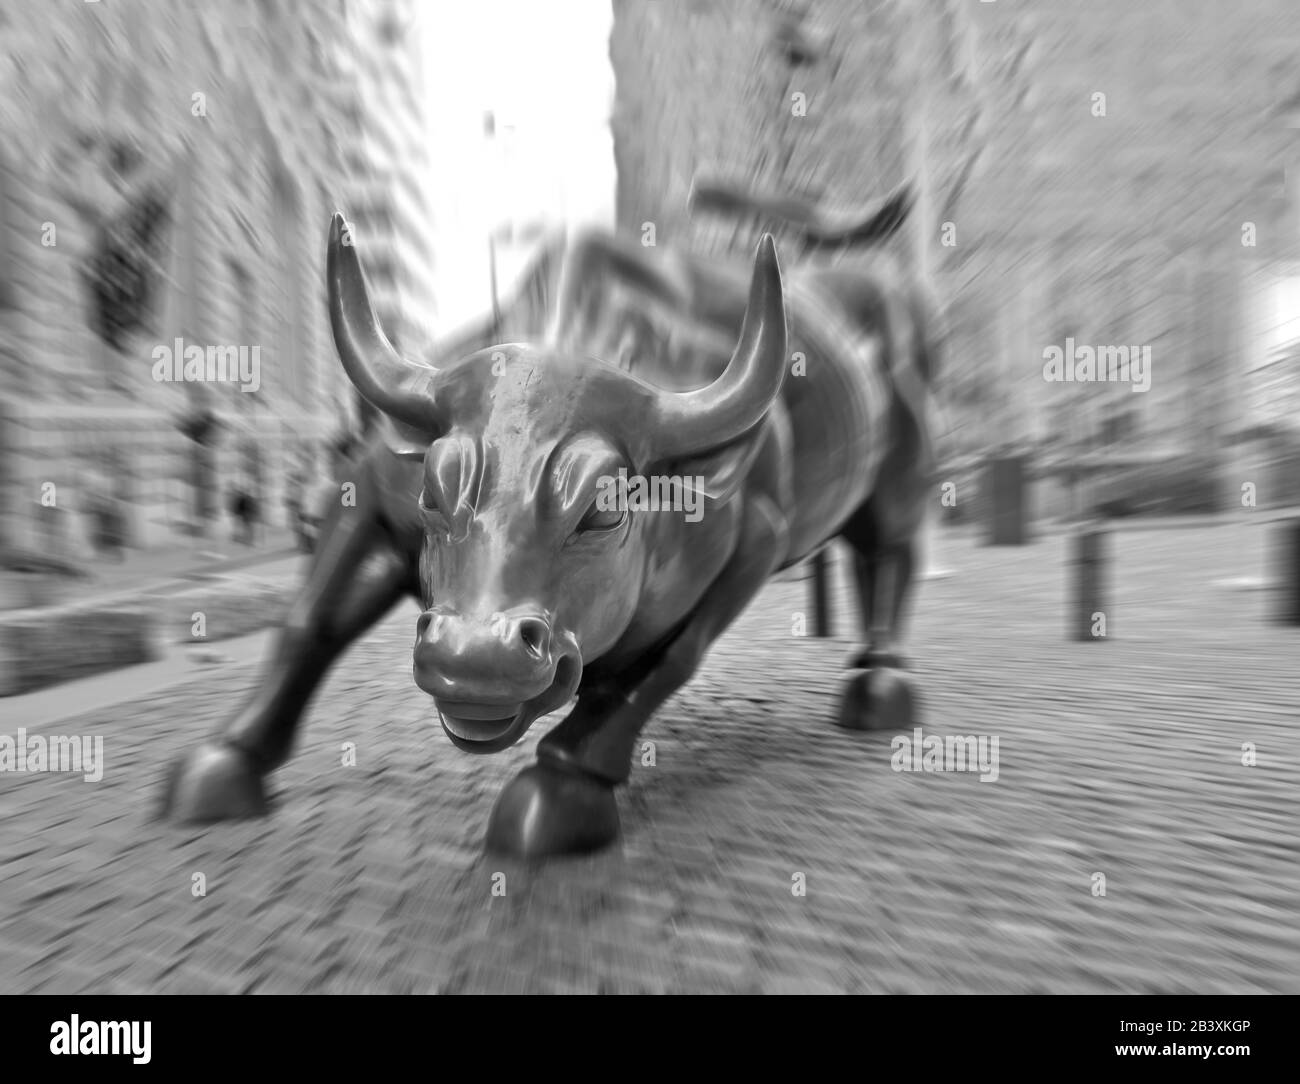 The Wall Street Bull À Lower Manhattan, New York, États-Unis. Grande sculpture en bronze d'Arturo Di Modica. Photographie avec mouvement, le visage de Bull est net Banque D'Images